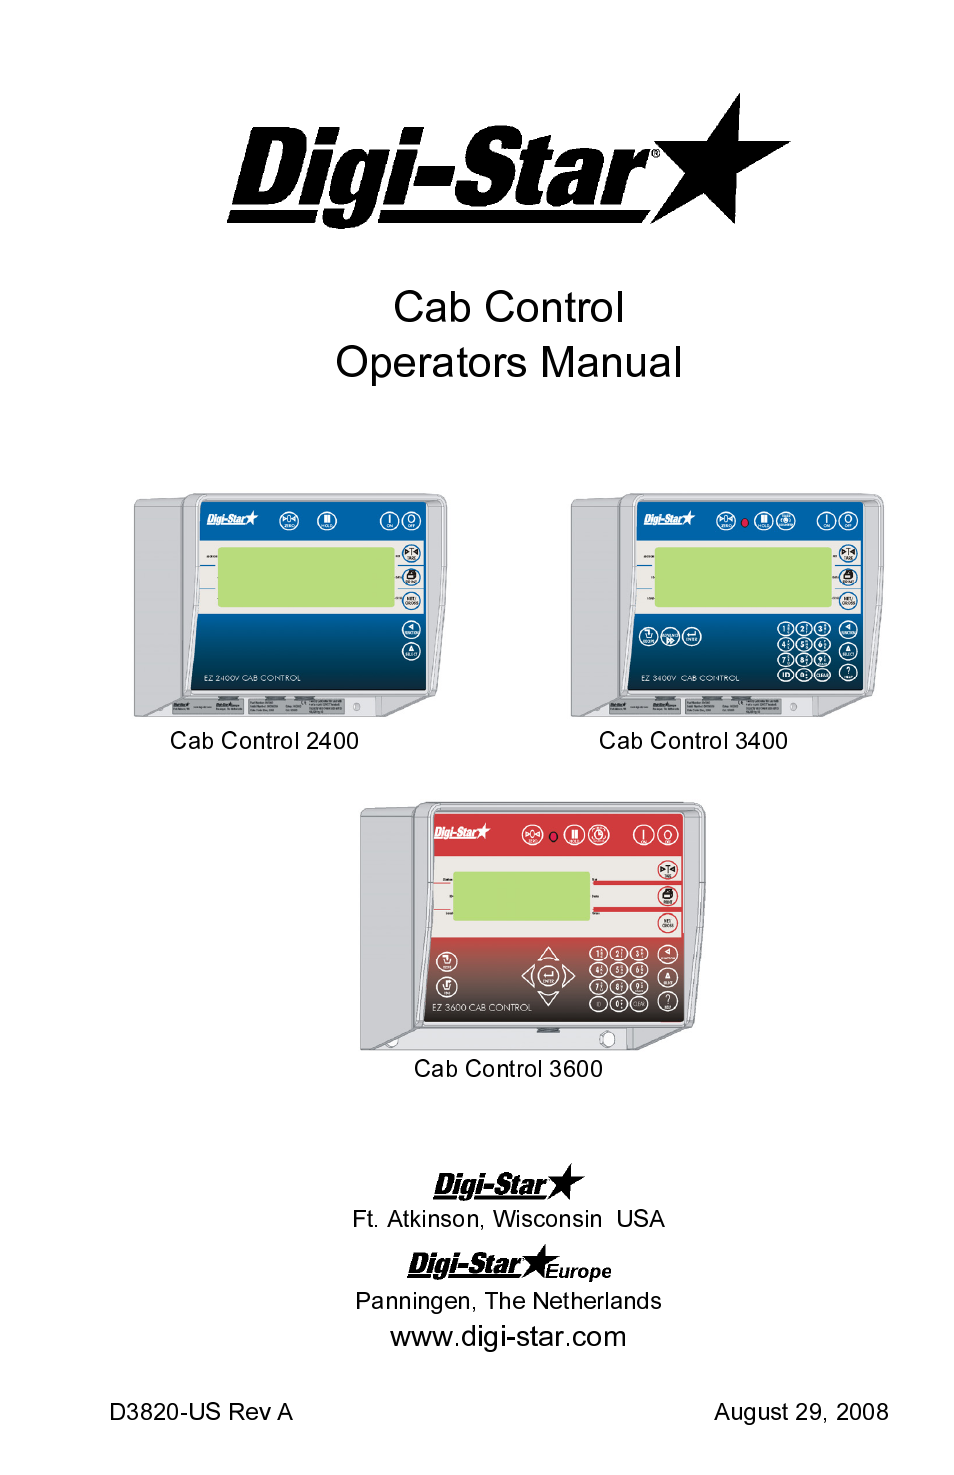 Cab Control 3600